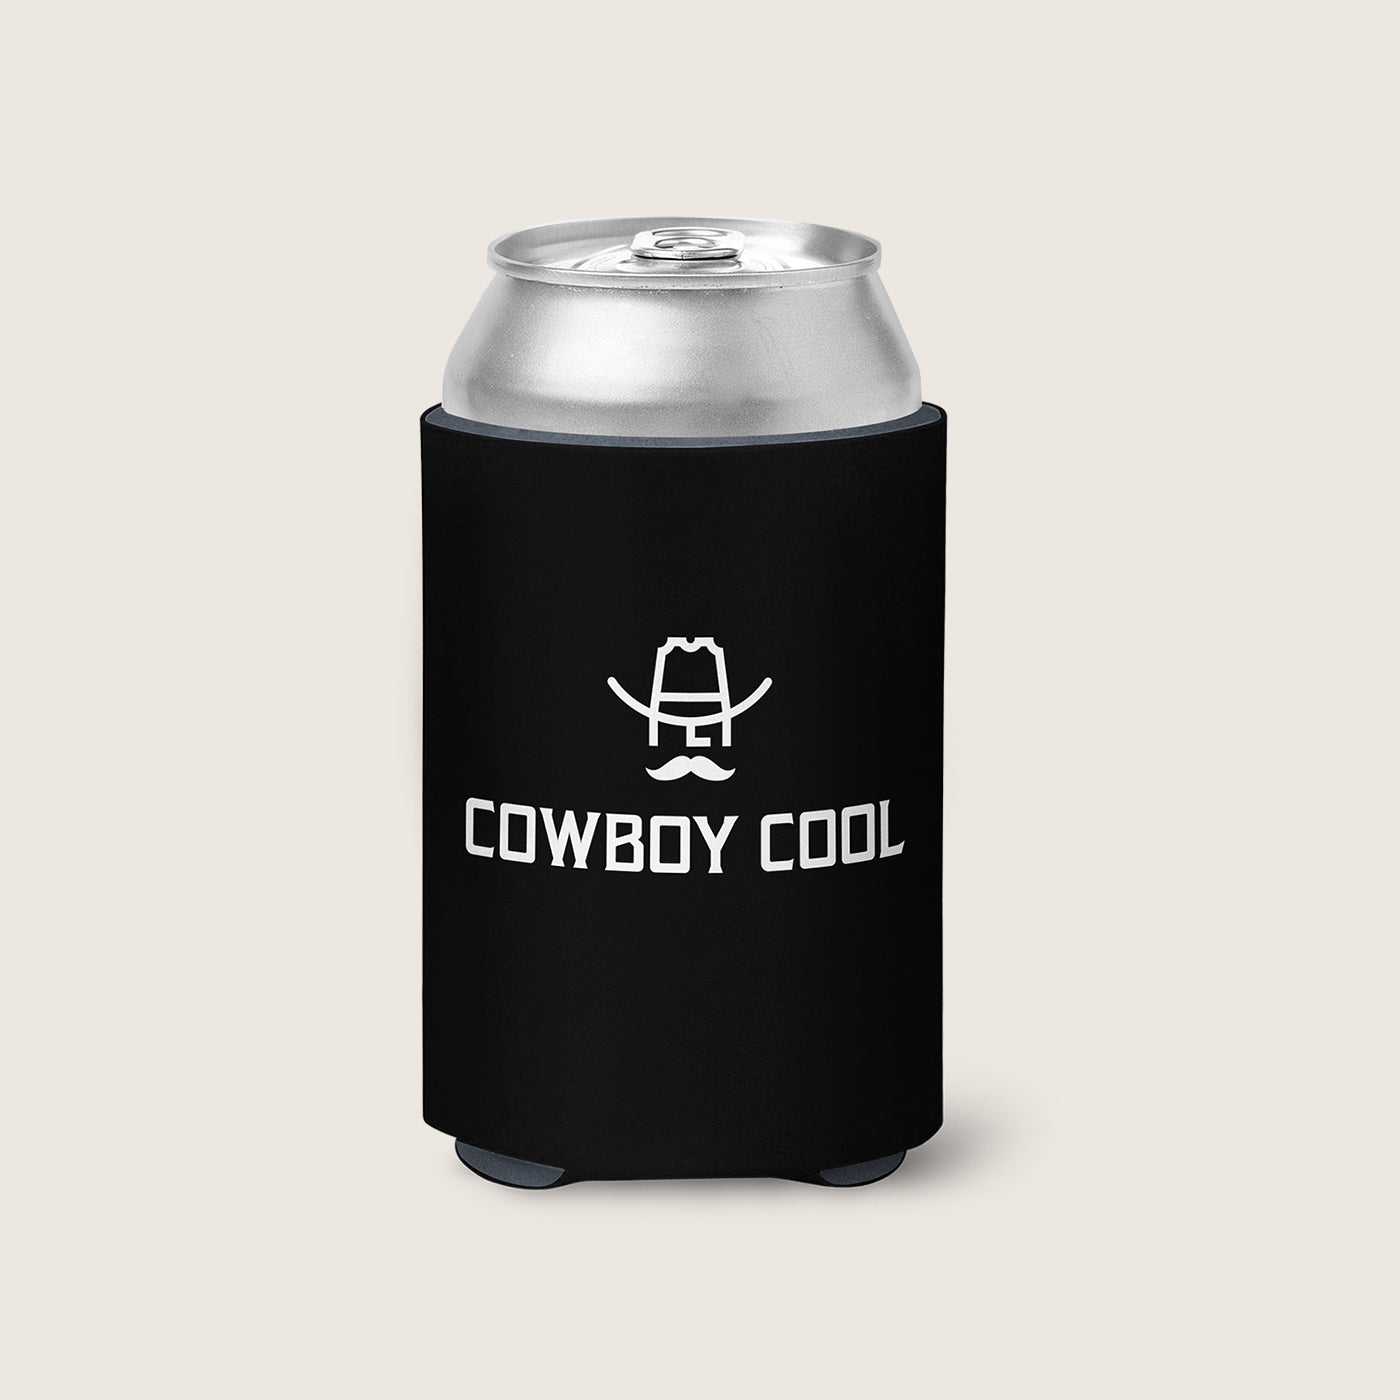 http://cowboycool.com/cdn/shop/files/CZ001-Cowboy-Cool-Coozie.jpg?v=1684188341